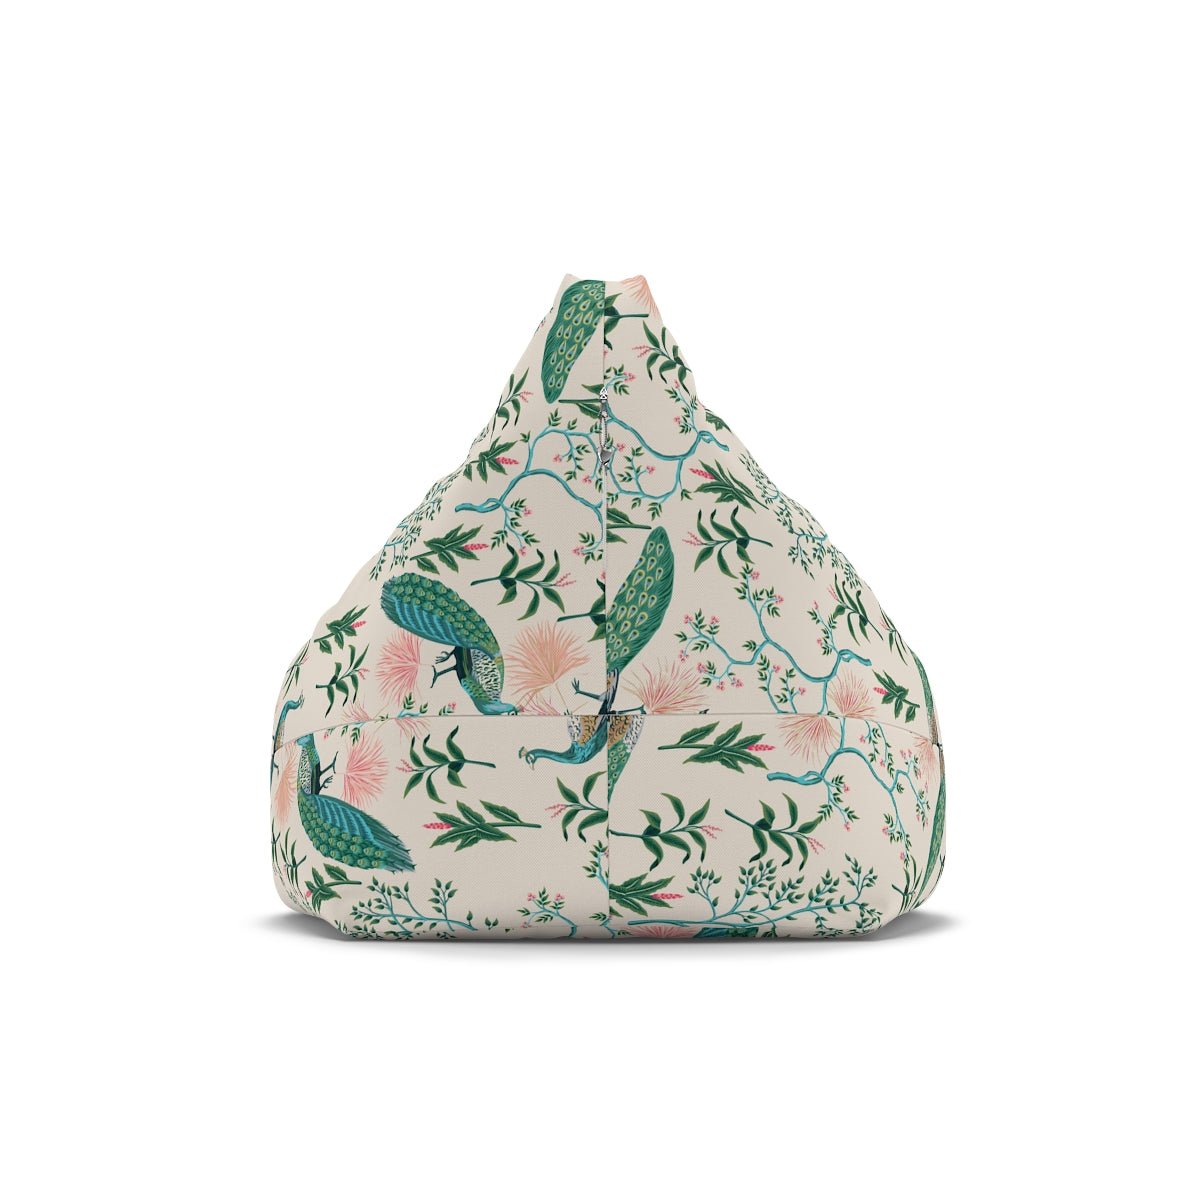 Chinoiserie Peacocks Bean Bag Chair Cover - Puffin Lime